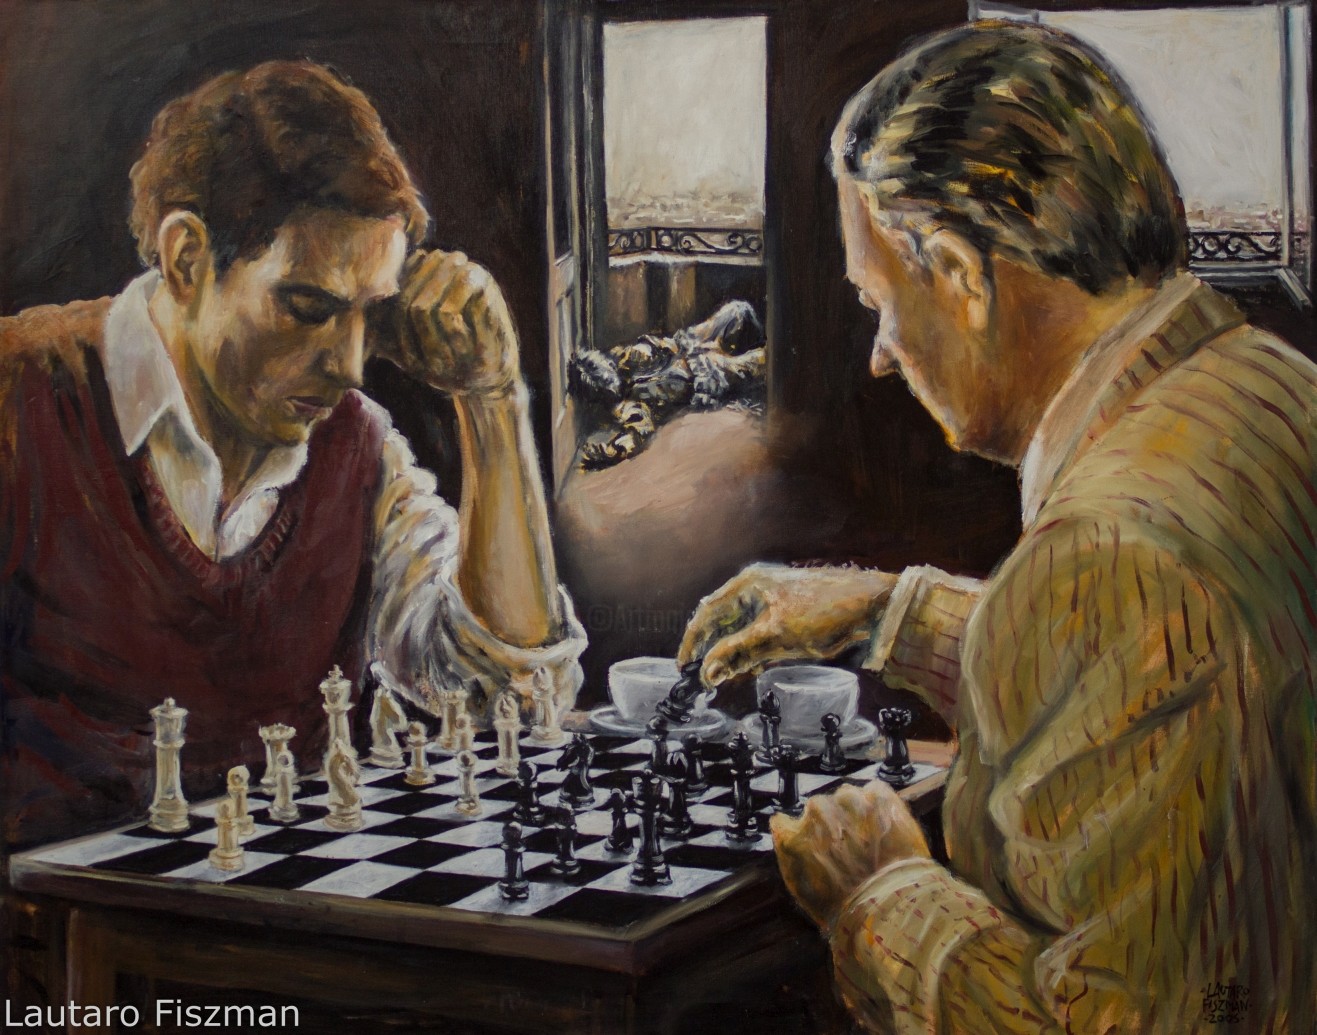 Как играть в шахматы с друзьями. Шахматисты картина Джеймса Норткота. Мясоедов игра в шахматы. Картина Марселя Дюшана "шахматная партия".